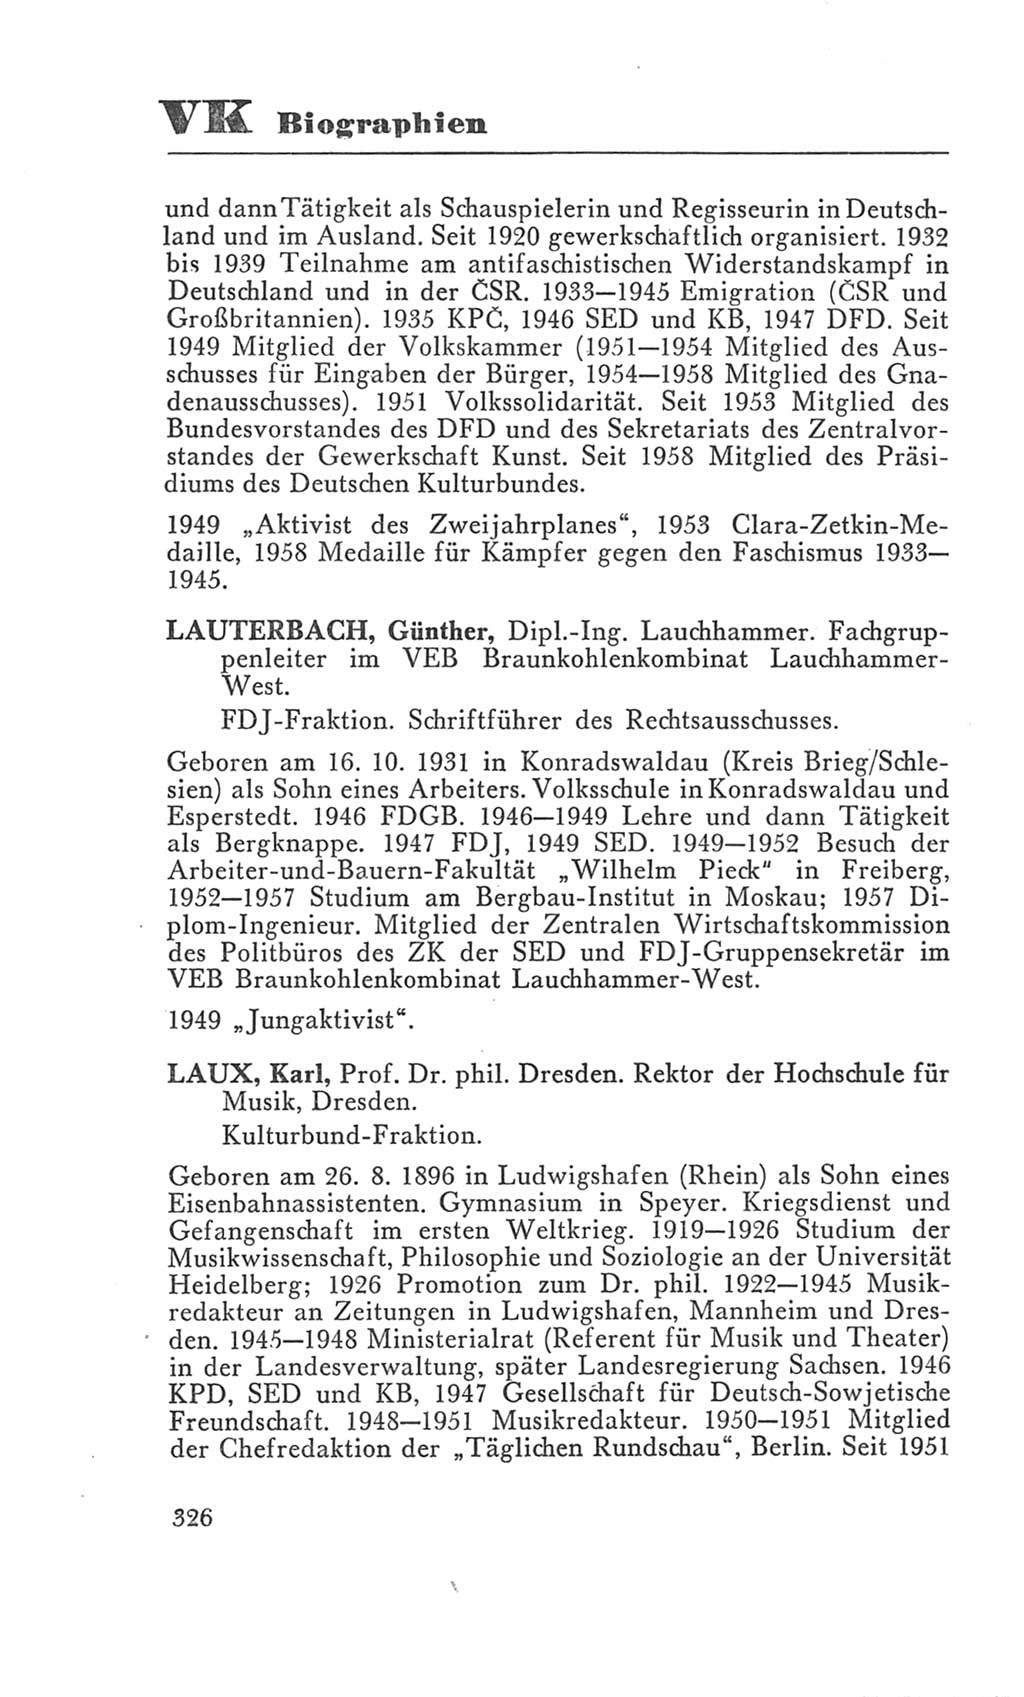 Handbuch der Volkskammer (VK) der Deutschen Demokratischen Republik (DDR), 3. Wahlperiode 1958-1963, Seite 326 (Hdb. VK. DDR 3. WP. 1958-1963, S. 326)